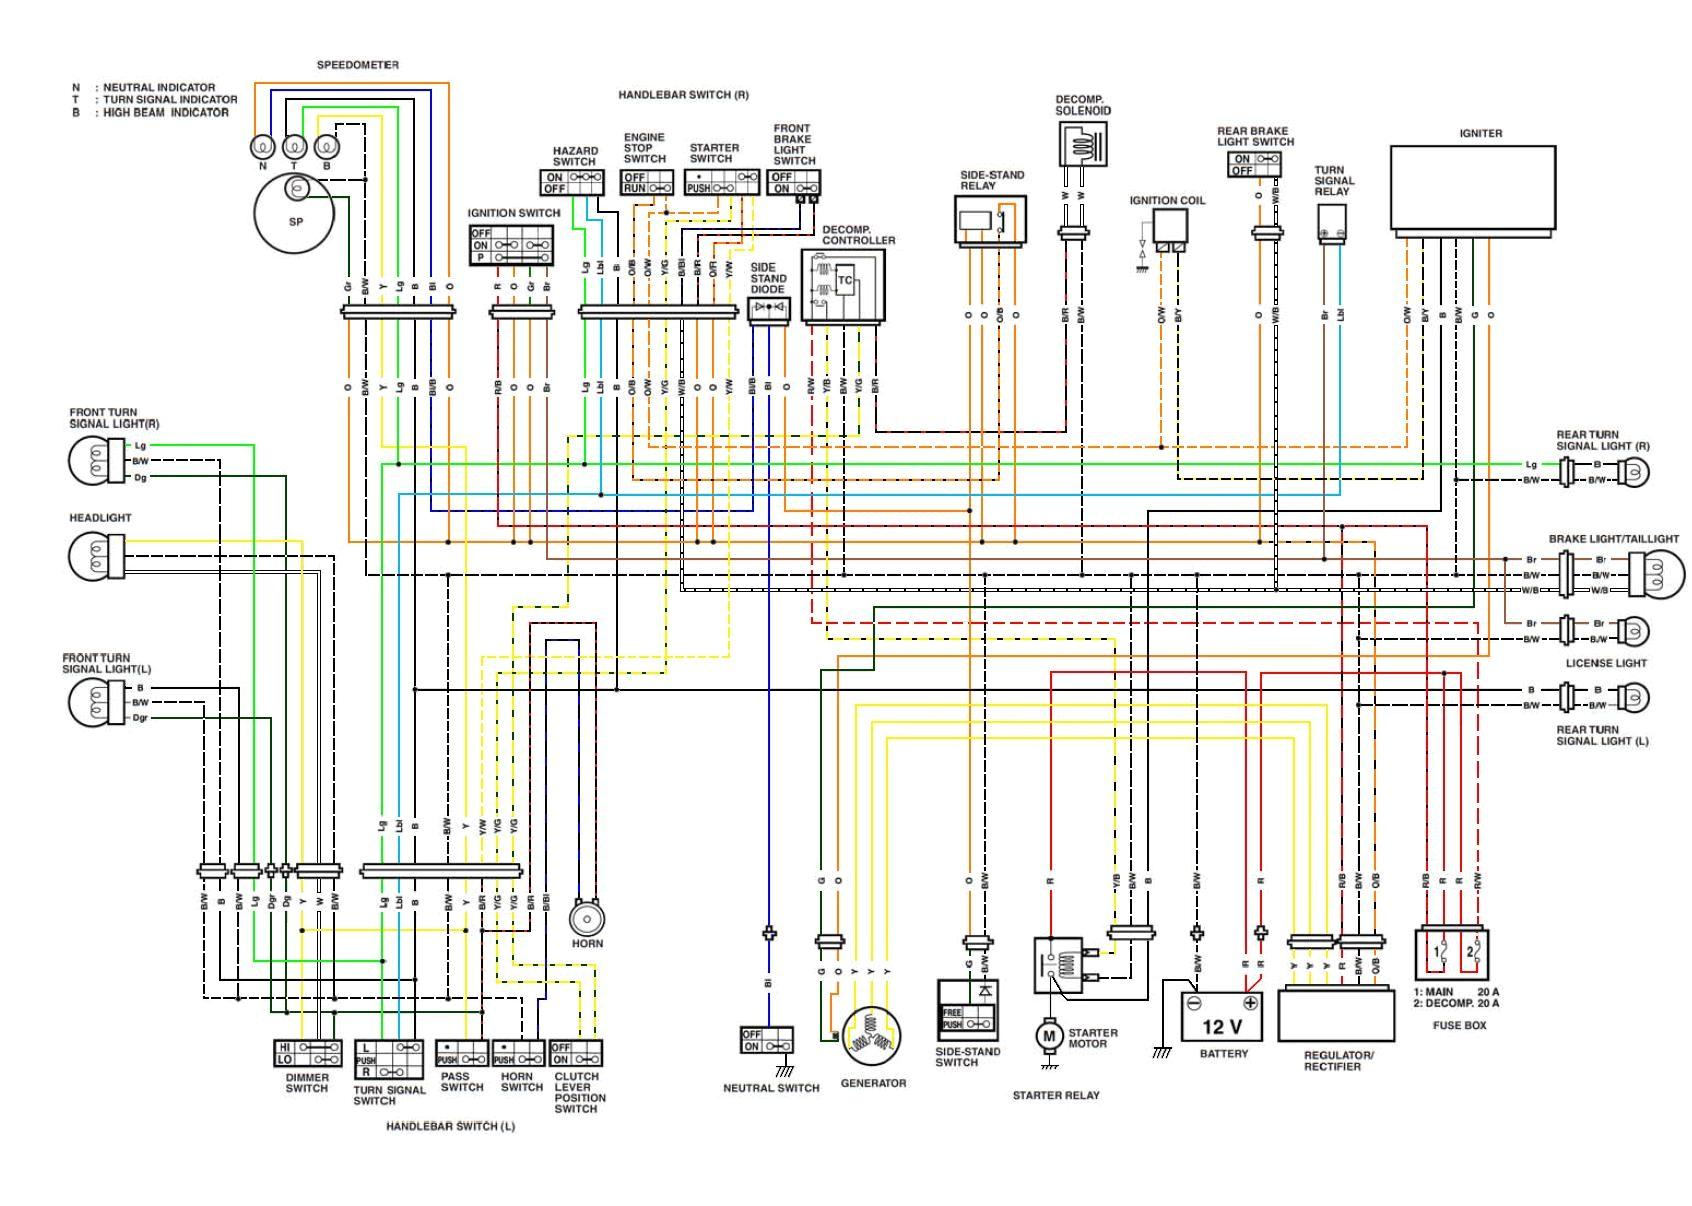 1989 harley davidson wiring diagram wiring diagram perfomance 1989 harley davidson wiring diagram wiring diagrams konsult